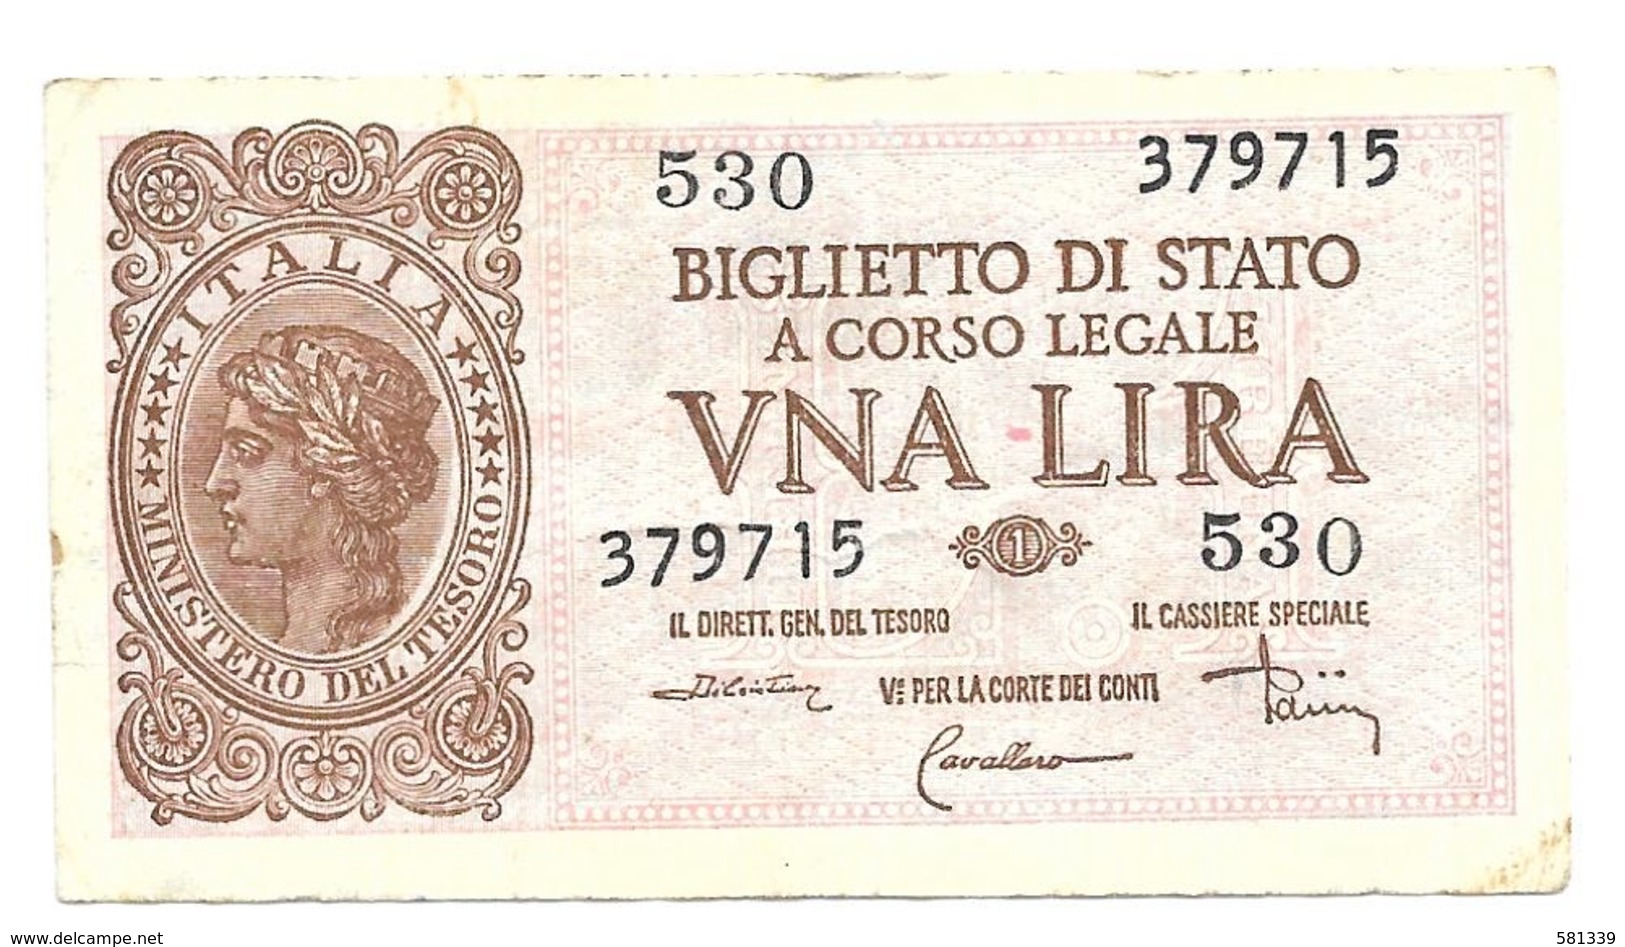 1944 - ITALIA Luogotenenza - Banconota LIRE 1 DiCristina Cavallaro Parisi - Italia – 1 Lira